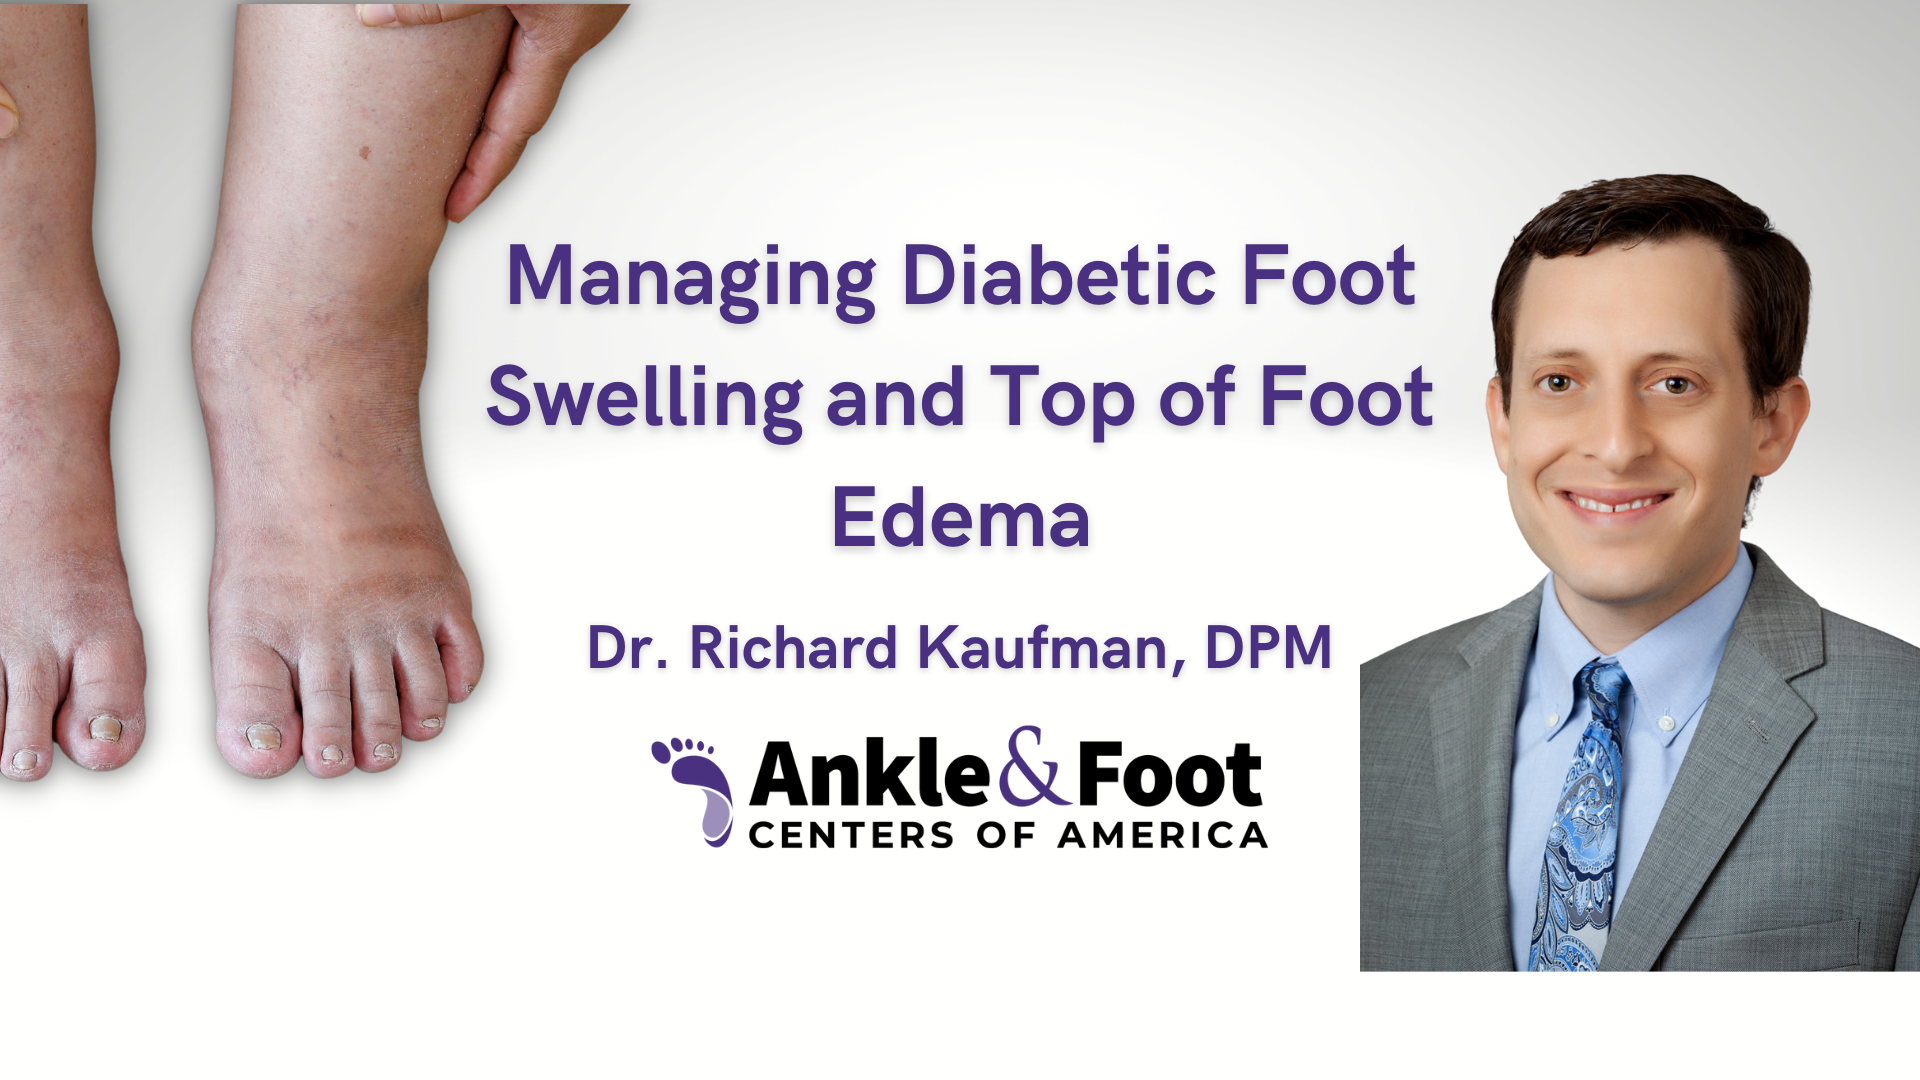 Diabetes Swollen Feet - Top of Foot Edema